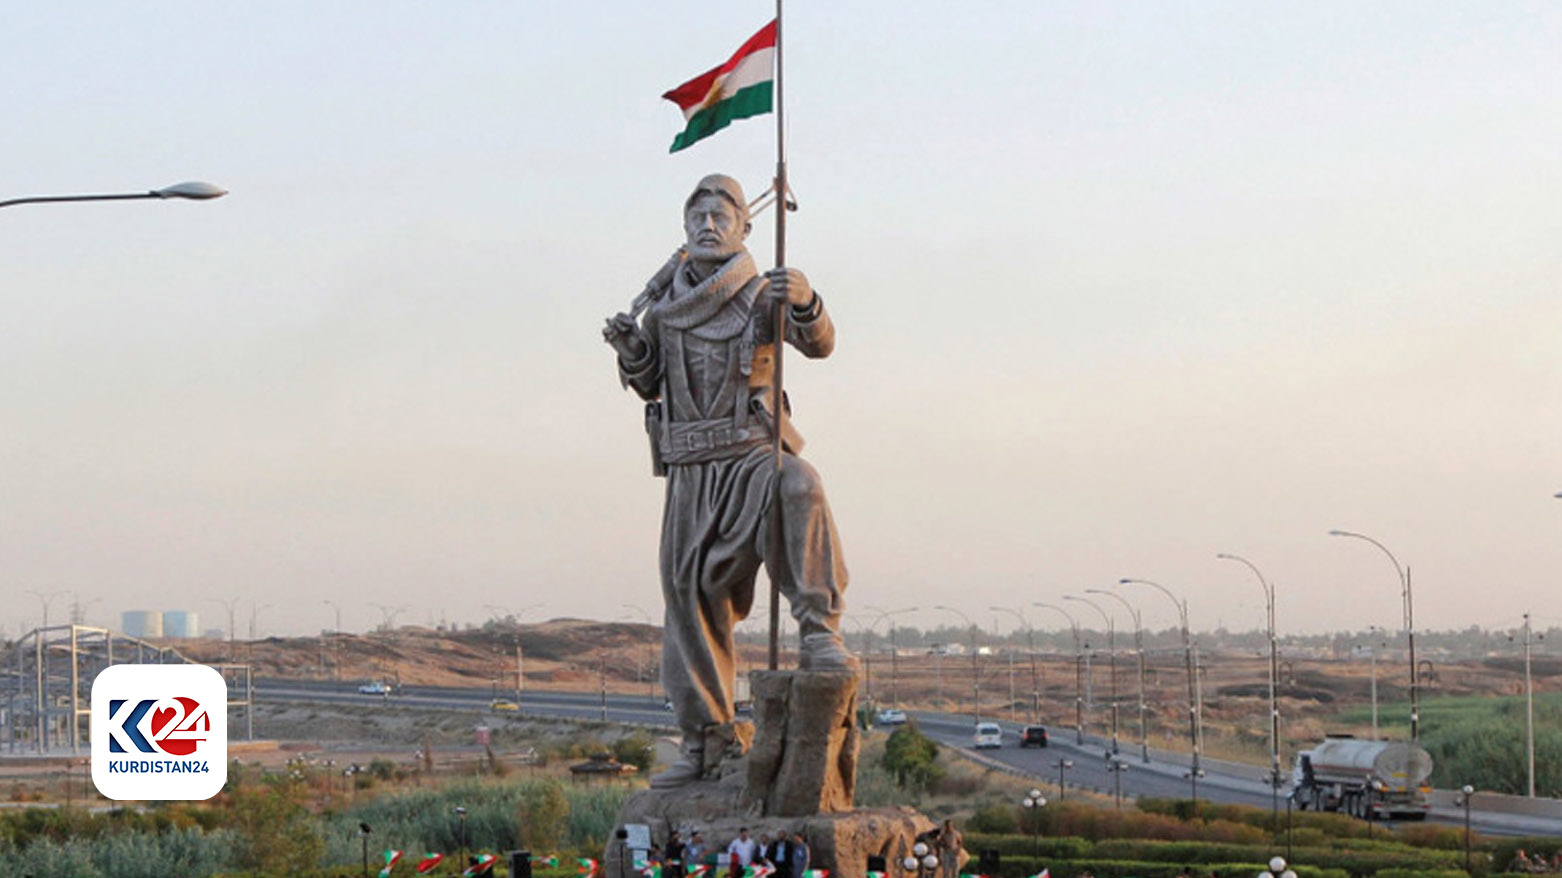 مجسمه پیشمرگ در کرکوک که پس از پیروزی نیروی پیشمرگ کوردستان بر داعش، نصب شد